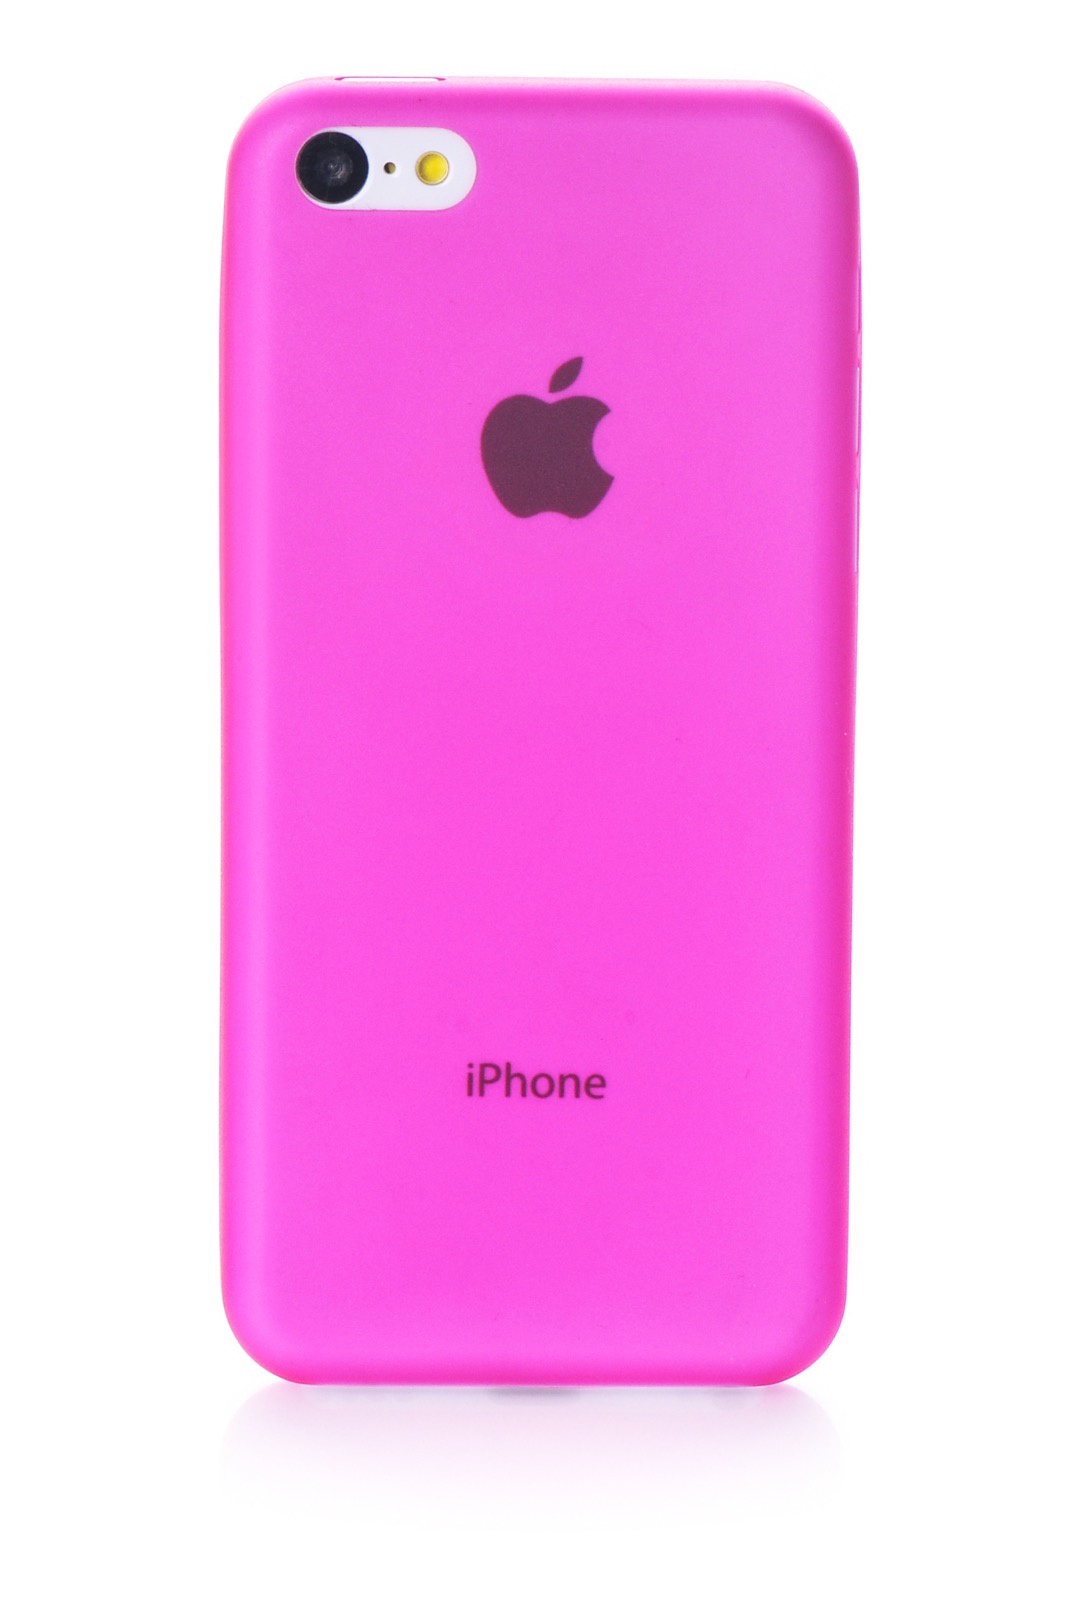 Купить розовый телефон. Apple iphone 5c 2013 Pink. Apple iphone 5 розовый. Розовый айфон. Чехол.